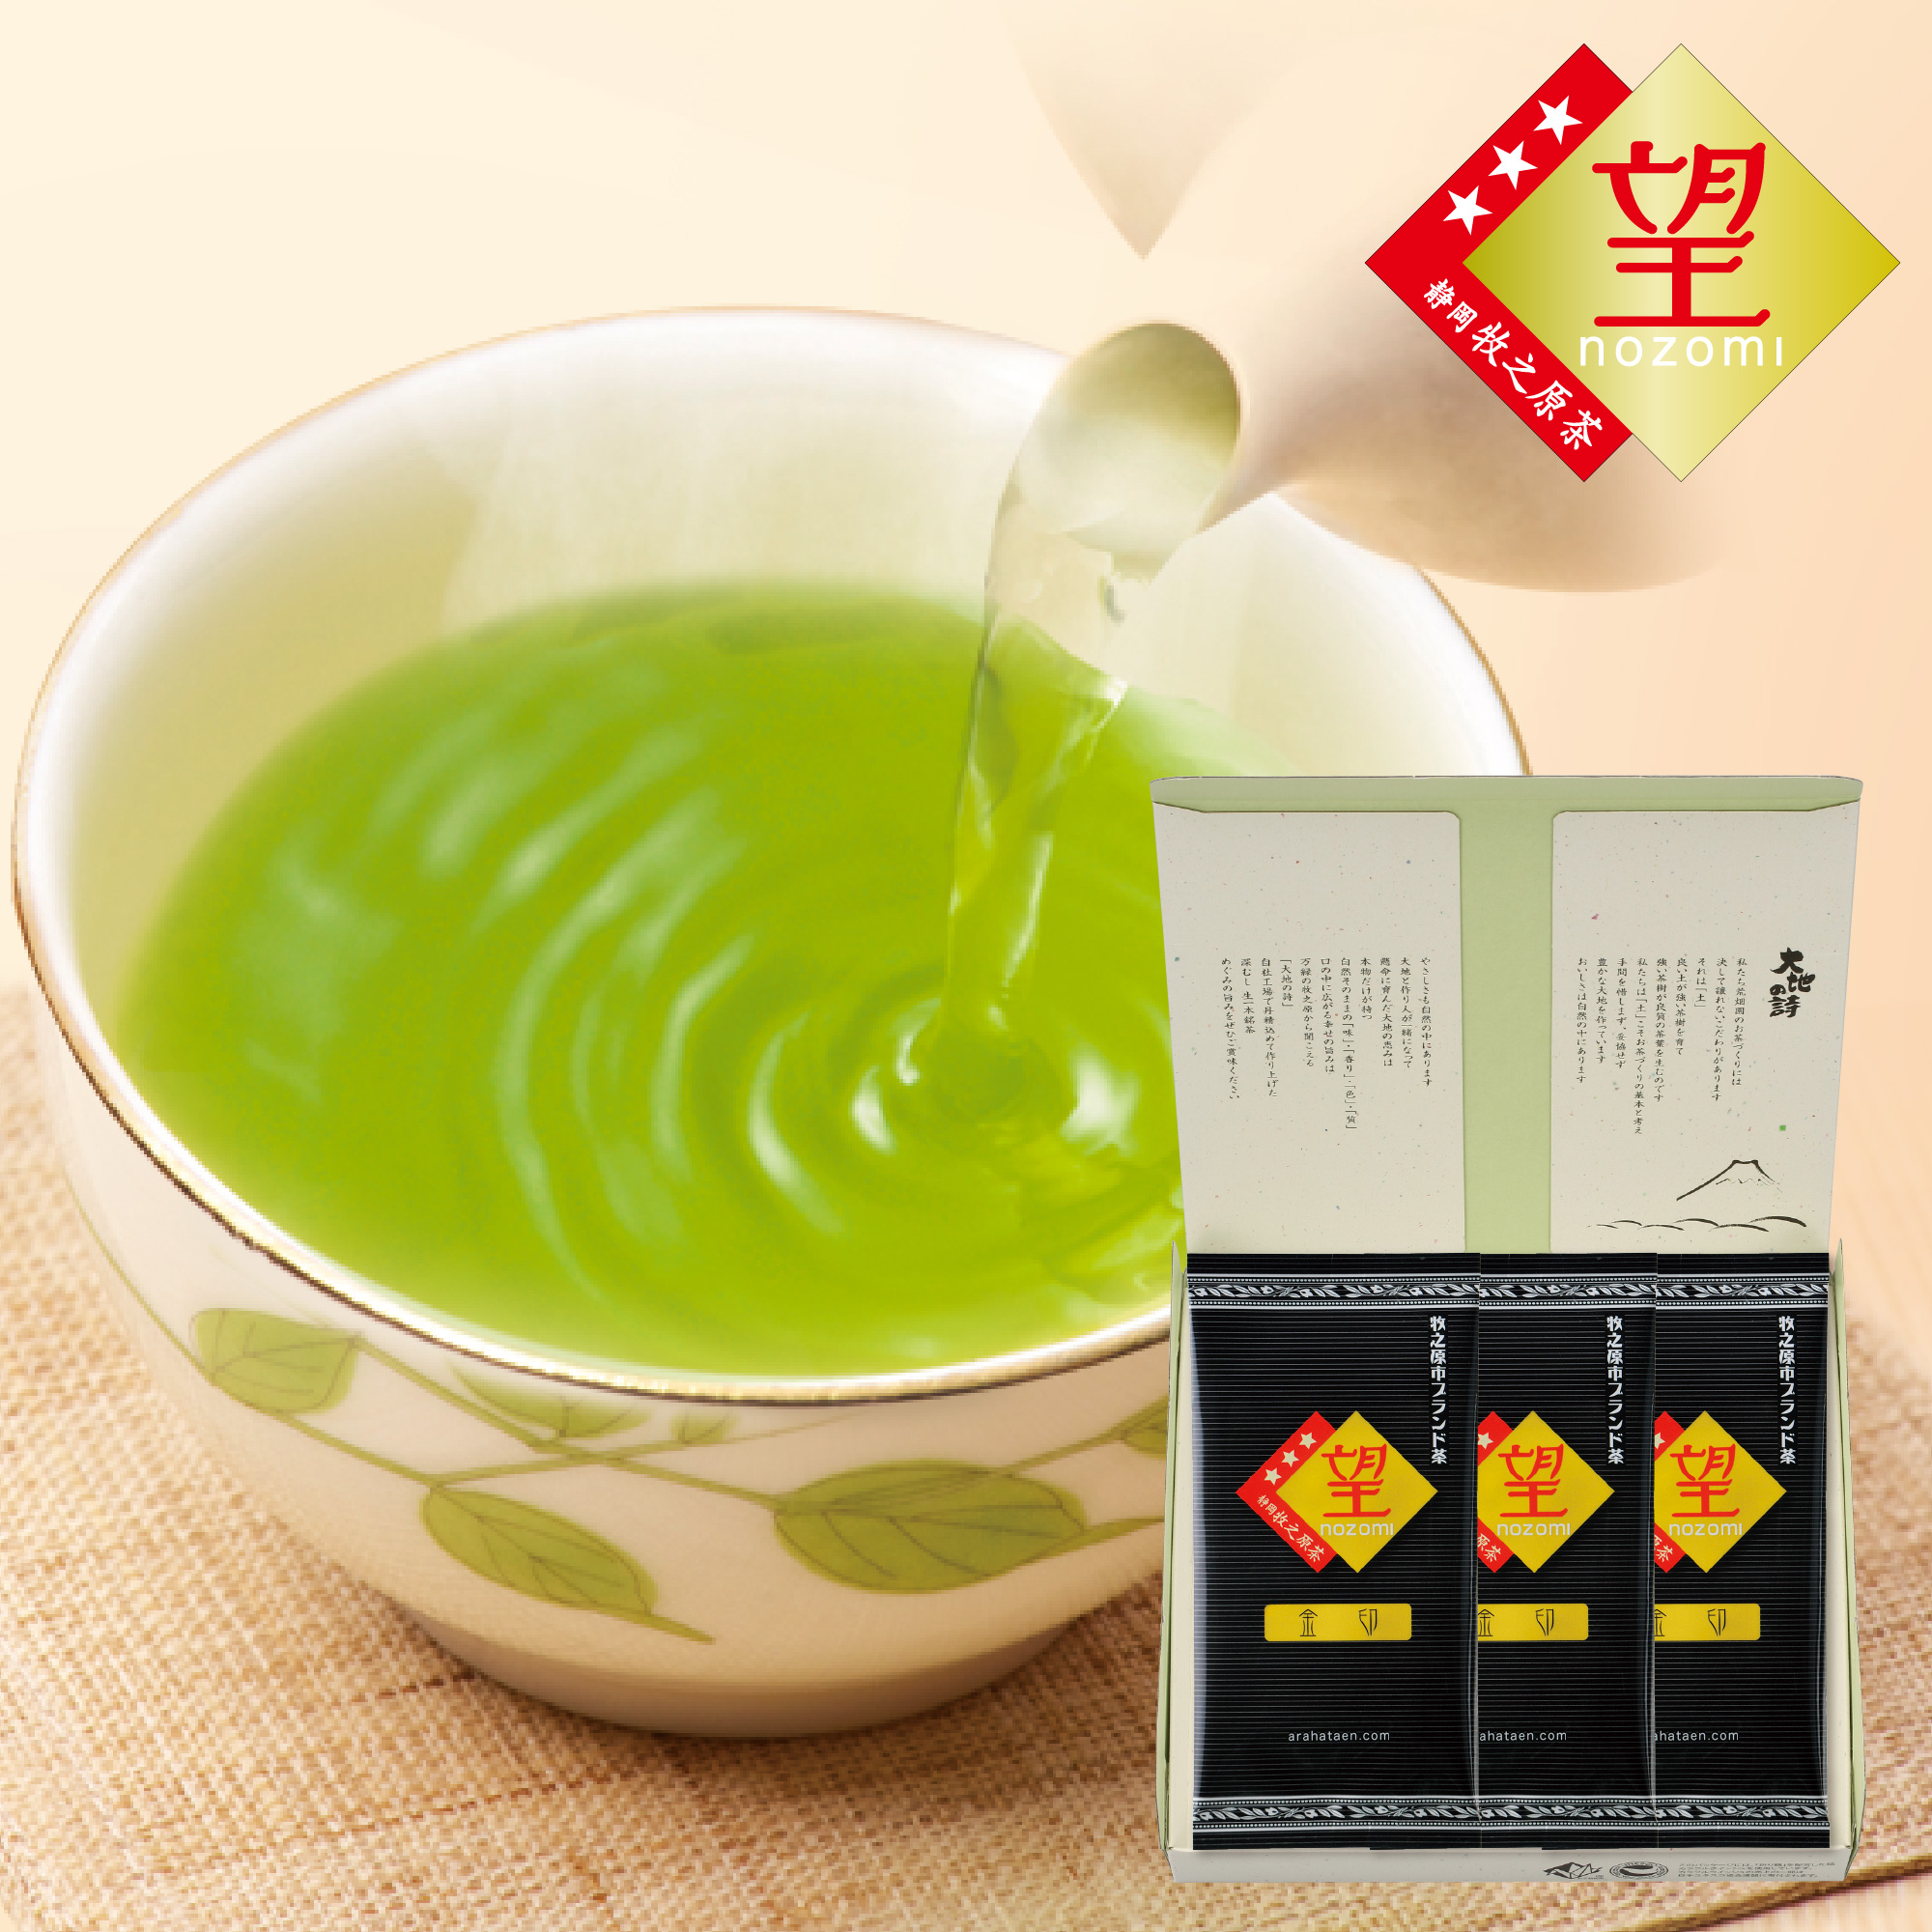 適切な価格 上抹茶玄米茶 330円×200g リーフティ 茶葉 お茶 緑茶 日本茶